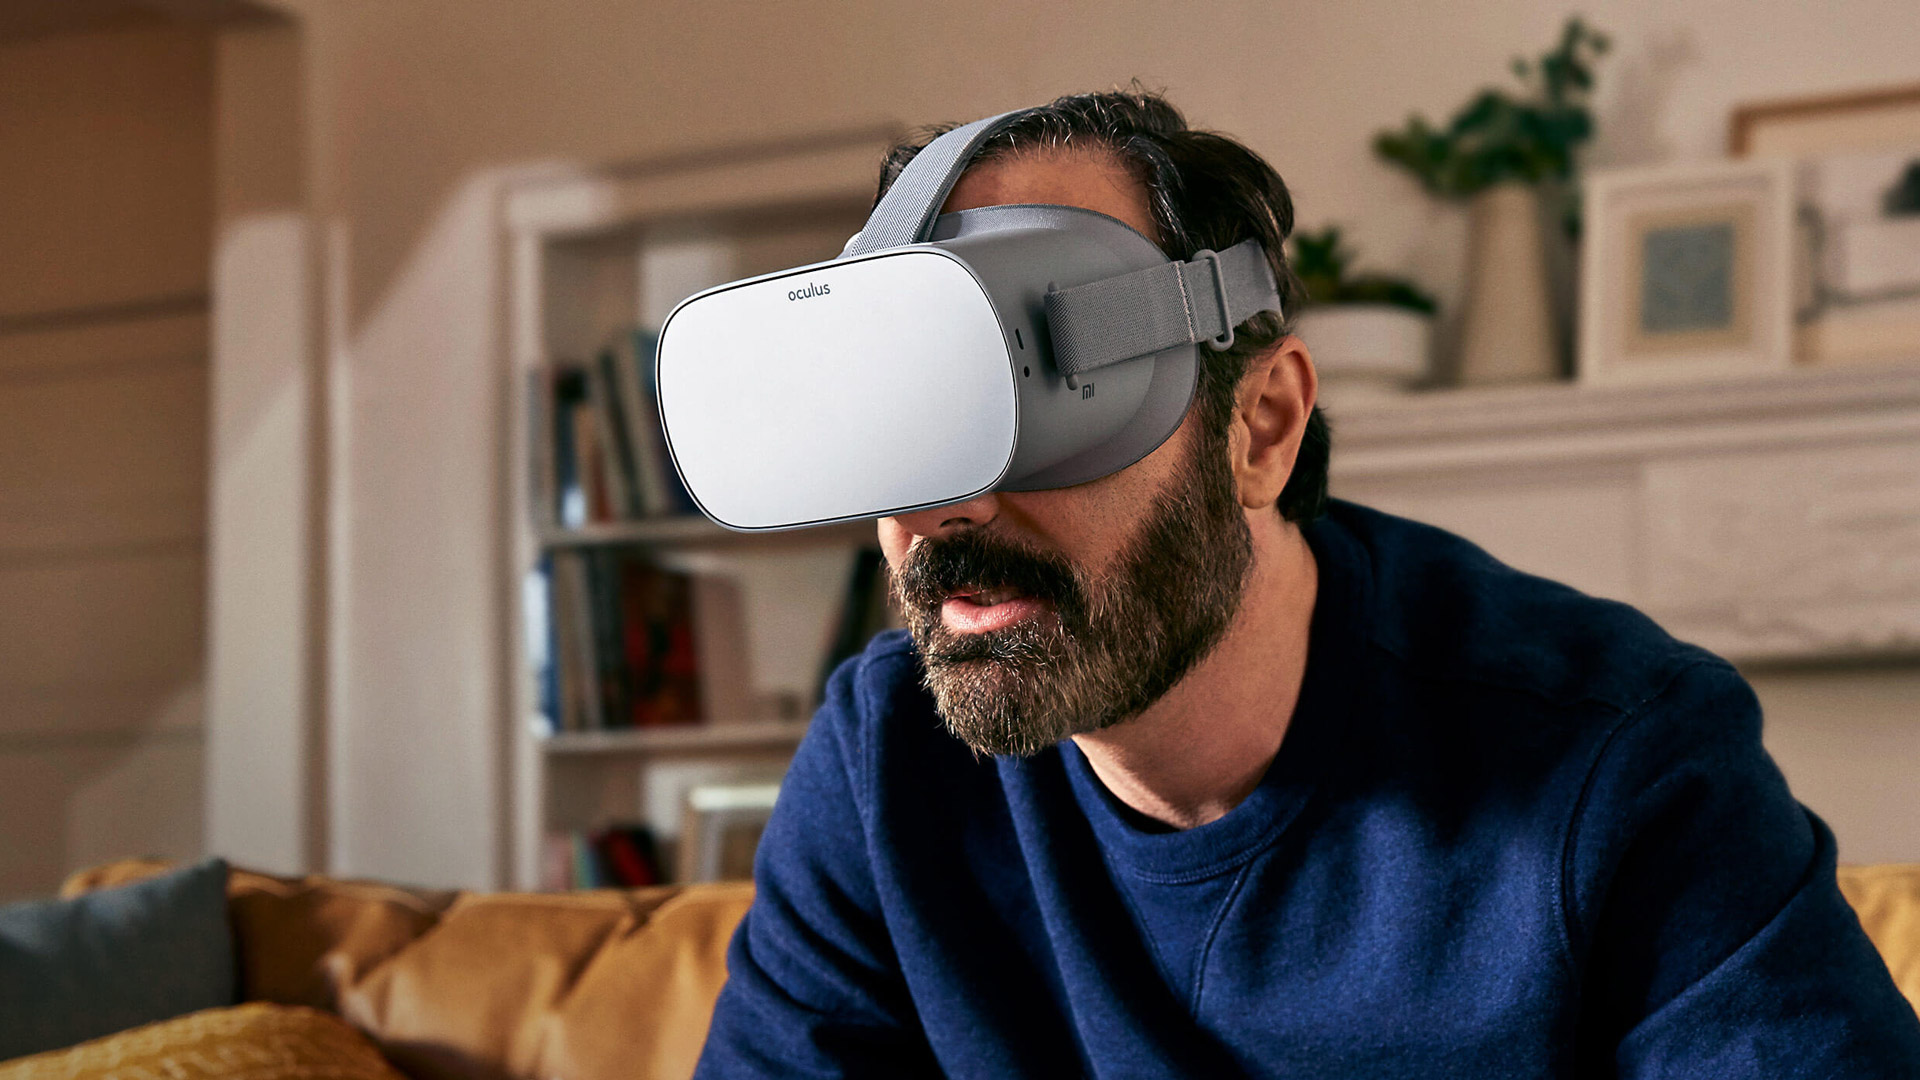 oculus go video games